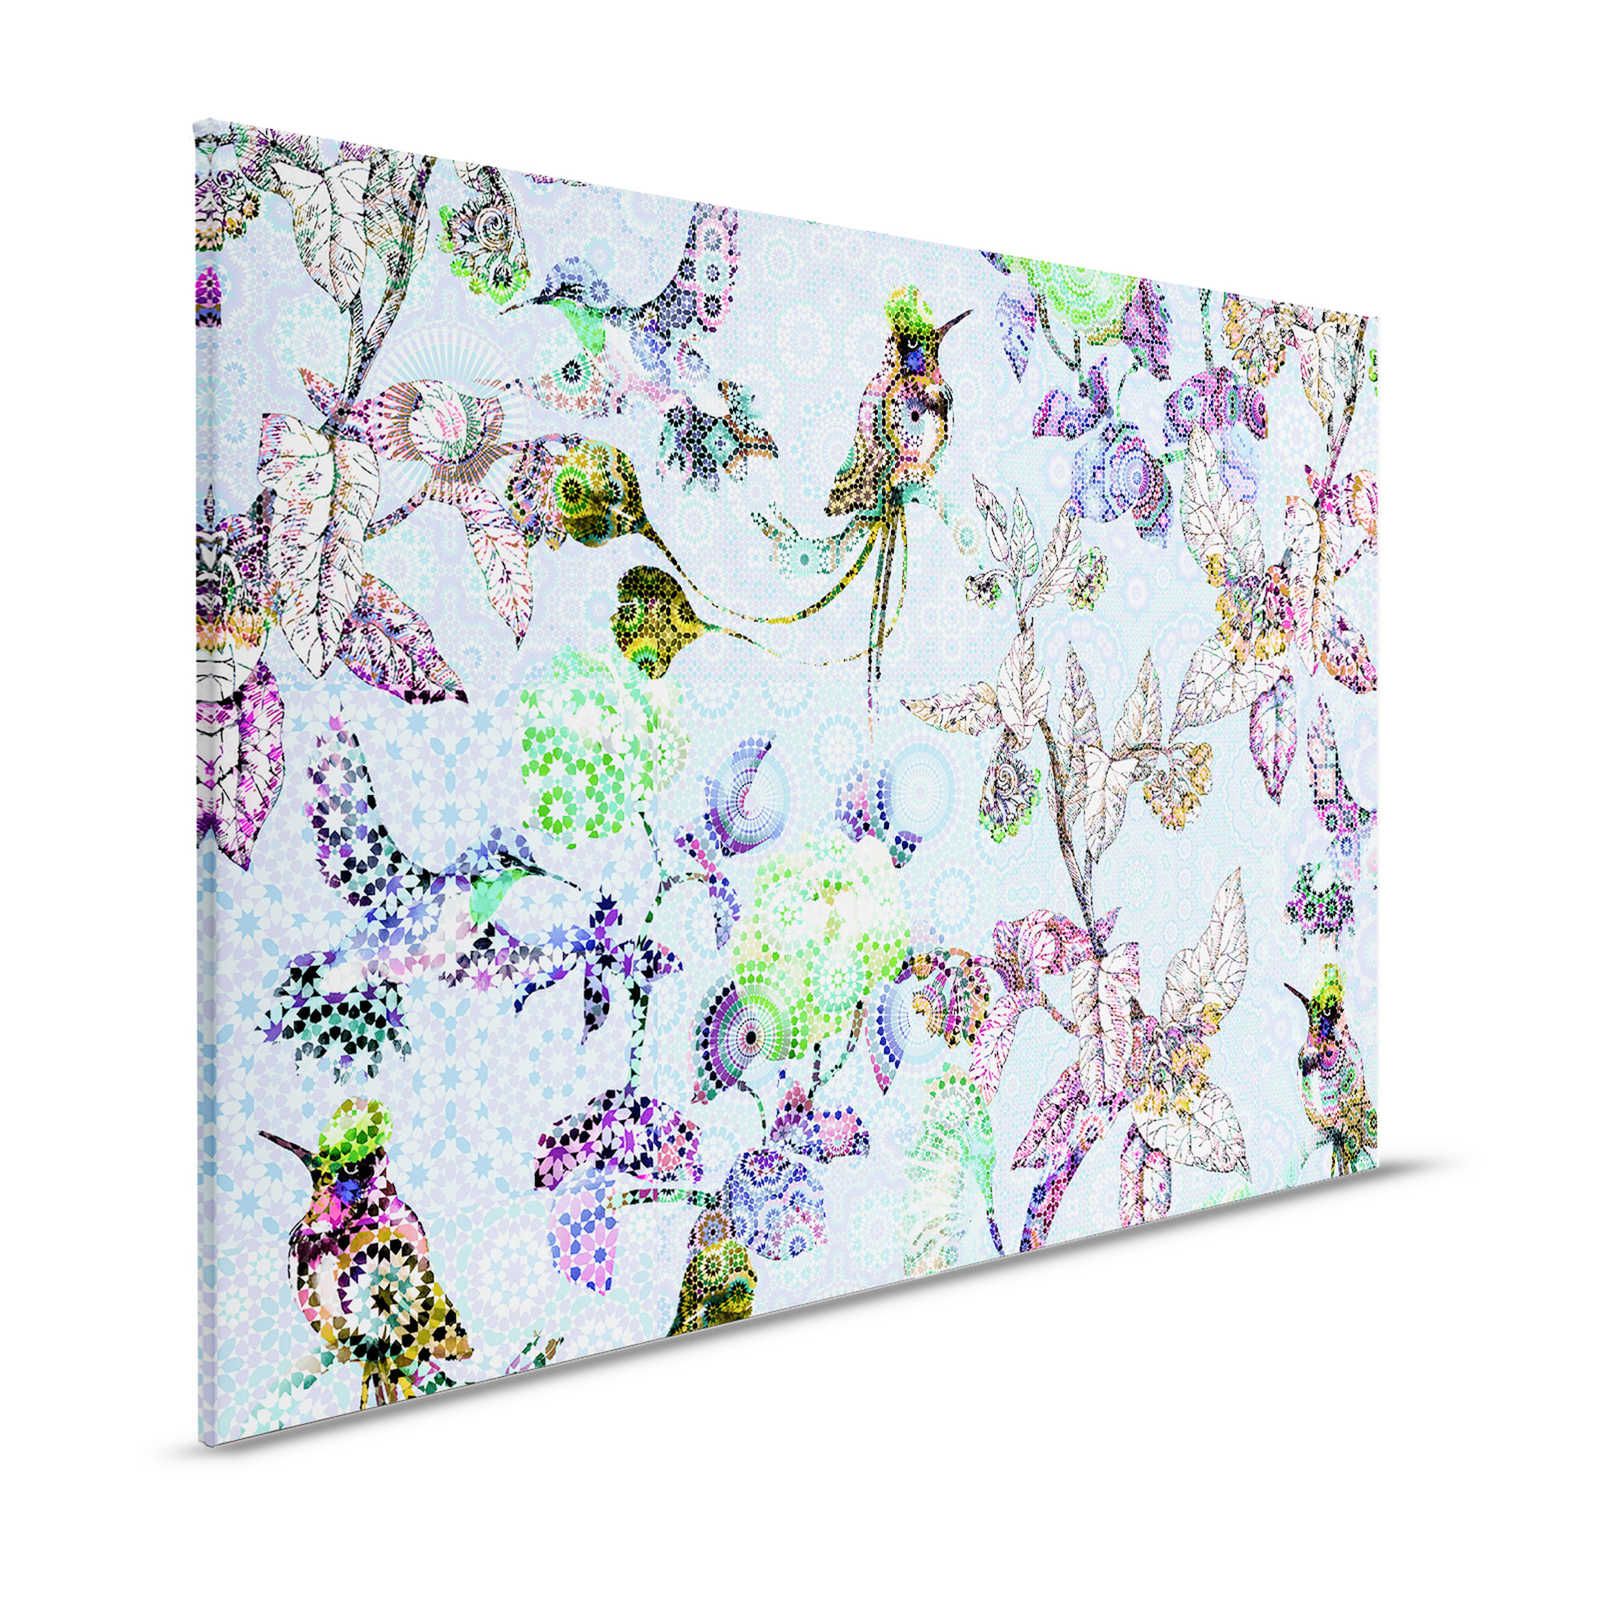         Leinwandbild Blumen & Vögel im Mosaik Stil – 1,20 m x 0,80 m
    